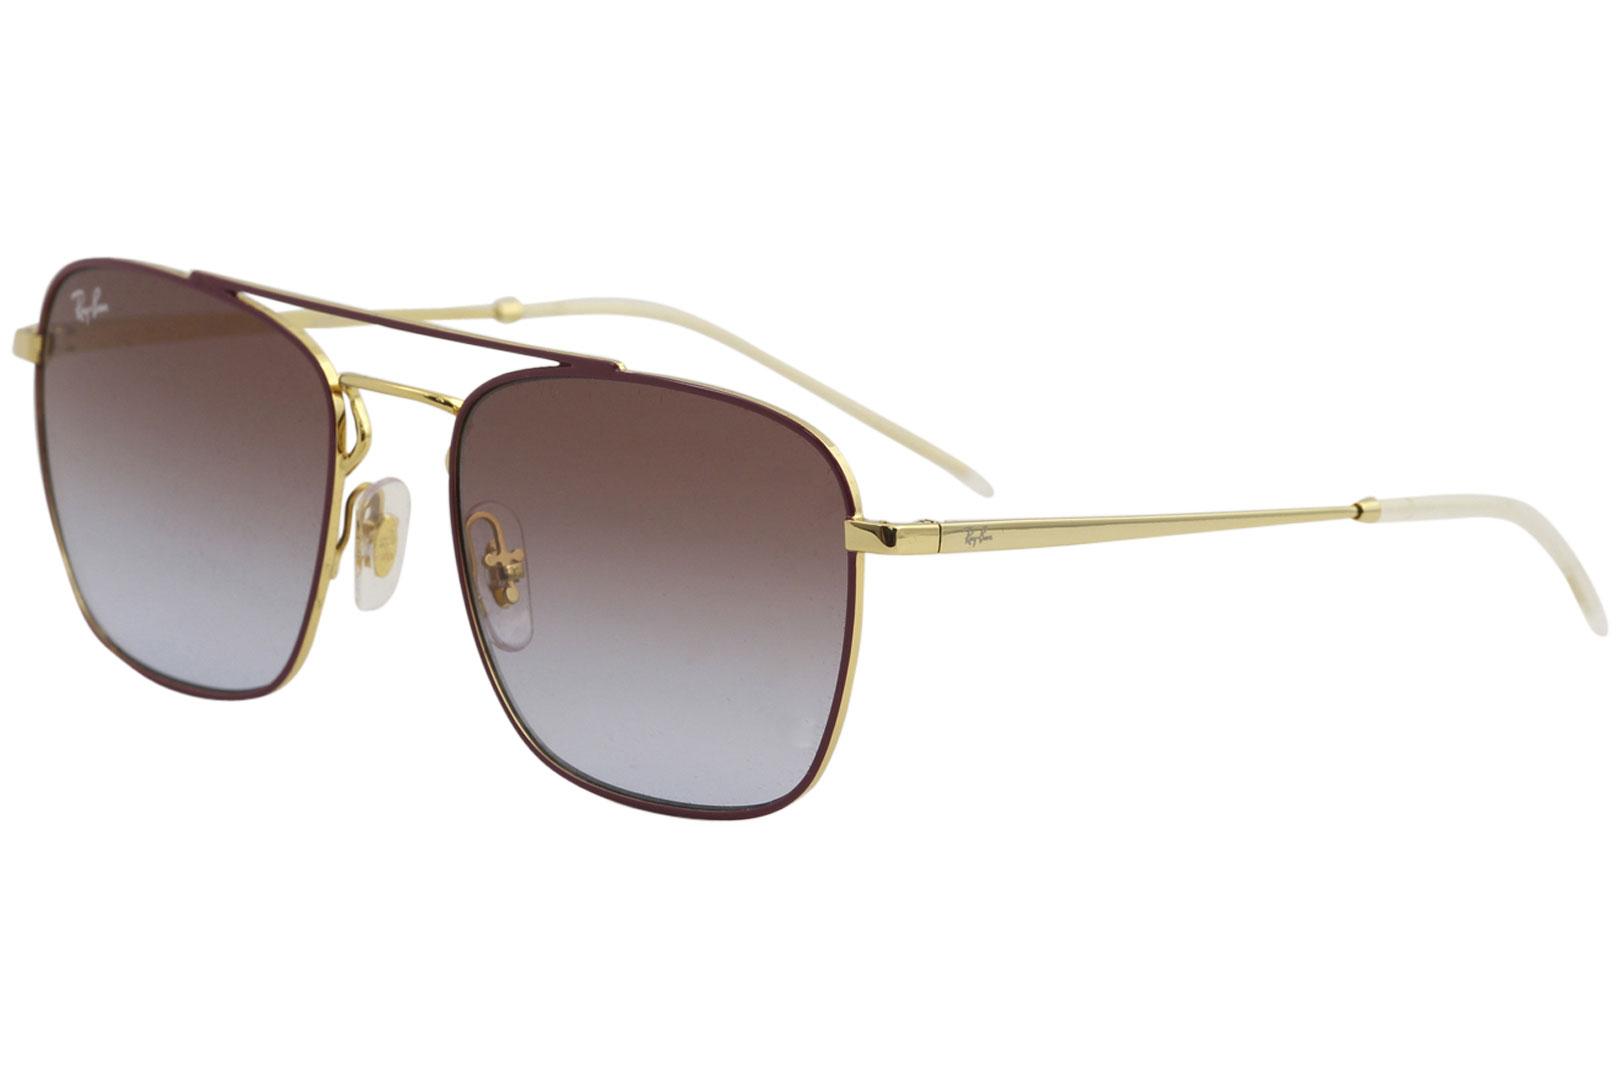 Ray Ban Men's Eyeglasses RB3588 RB/3588 Fashion Pilot Sunglasses - Gold Bordeaux/Violet Blue Gradient   9060/I8 - Lens 55 Bridge 19 Temple 140mm